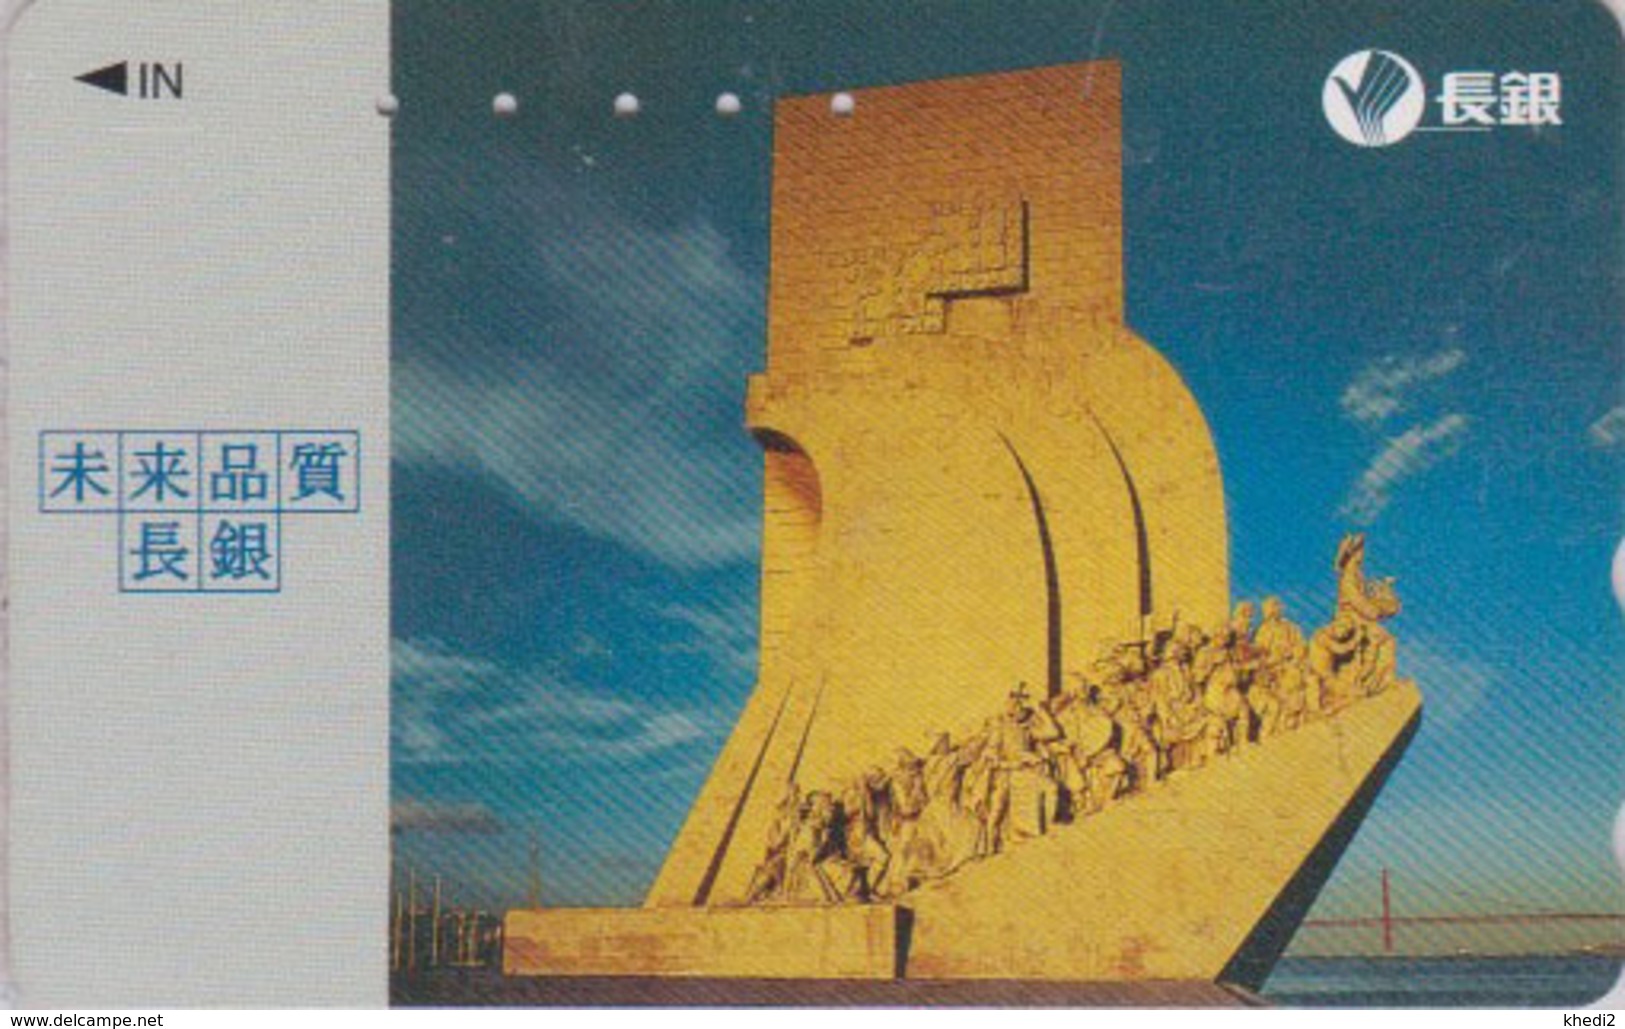 TC Japon / 110-200454 - PORTUGAL - LISBONNE / MONUMENT DES DECOUVERTES - Japan Phonecard / Not Greece Grece ! - Paysages